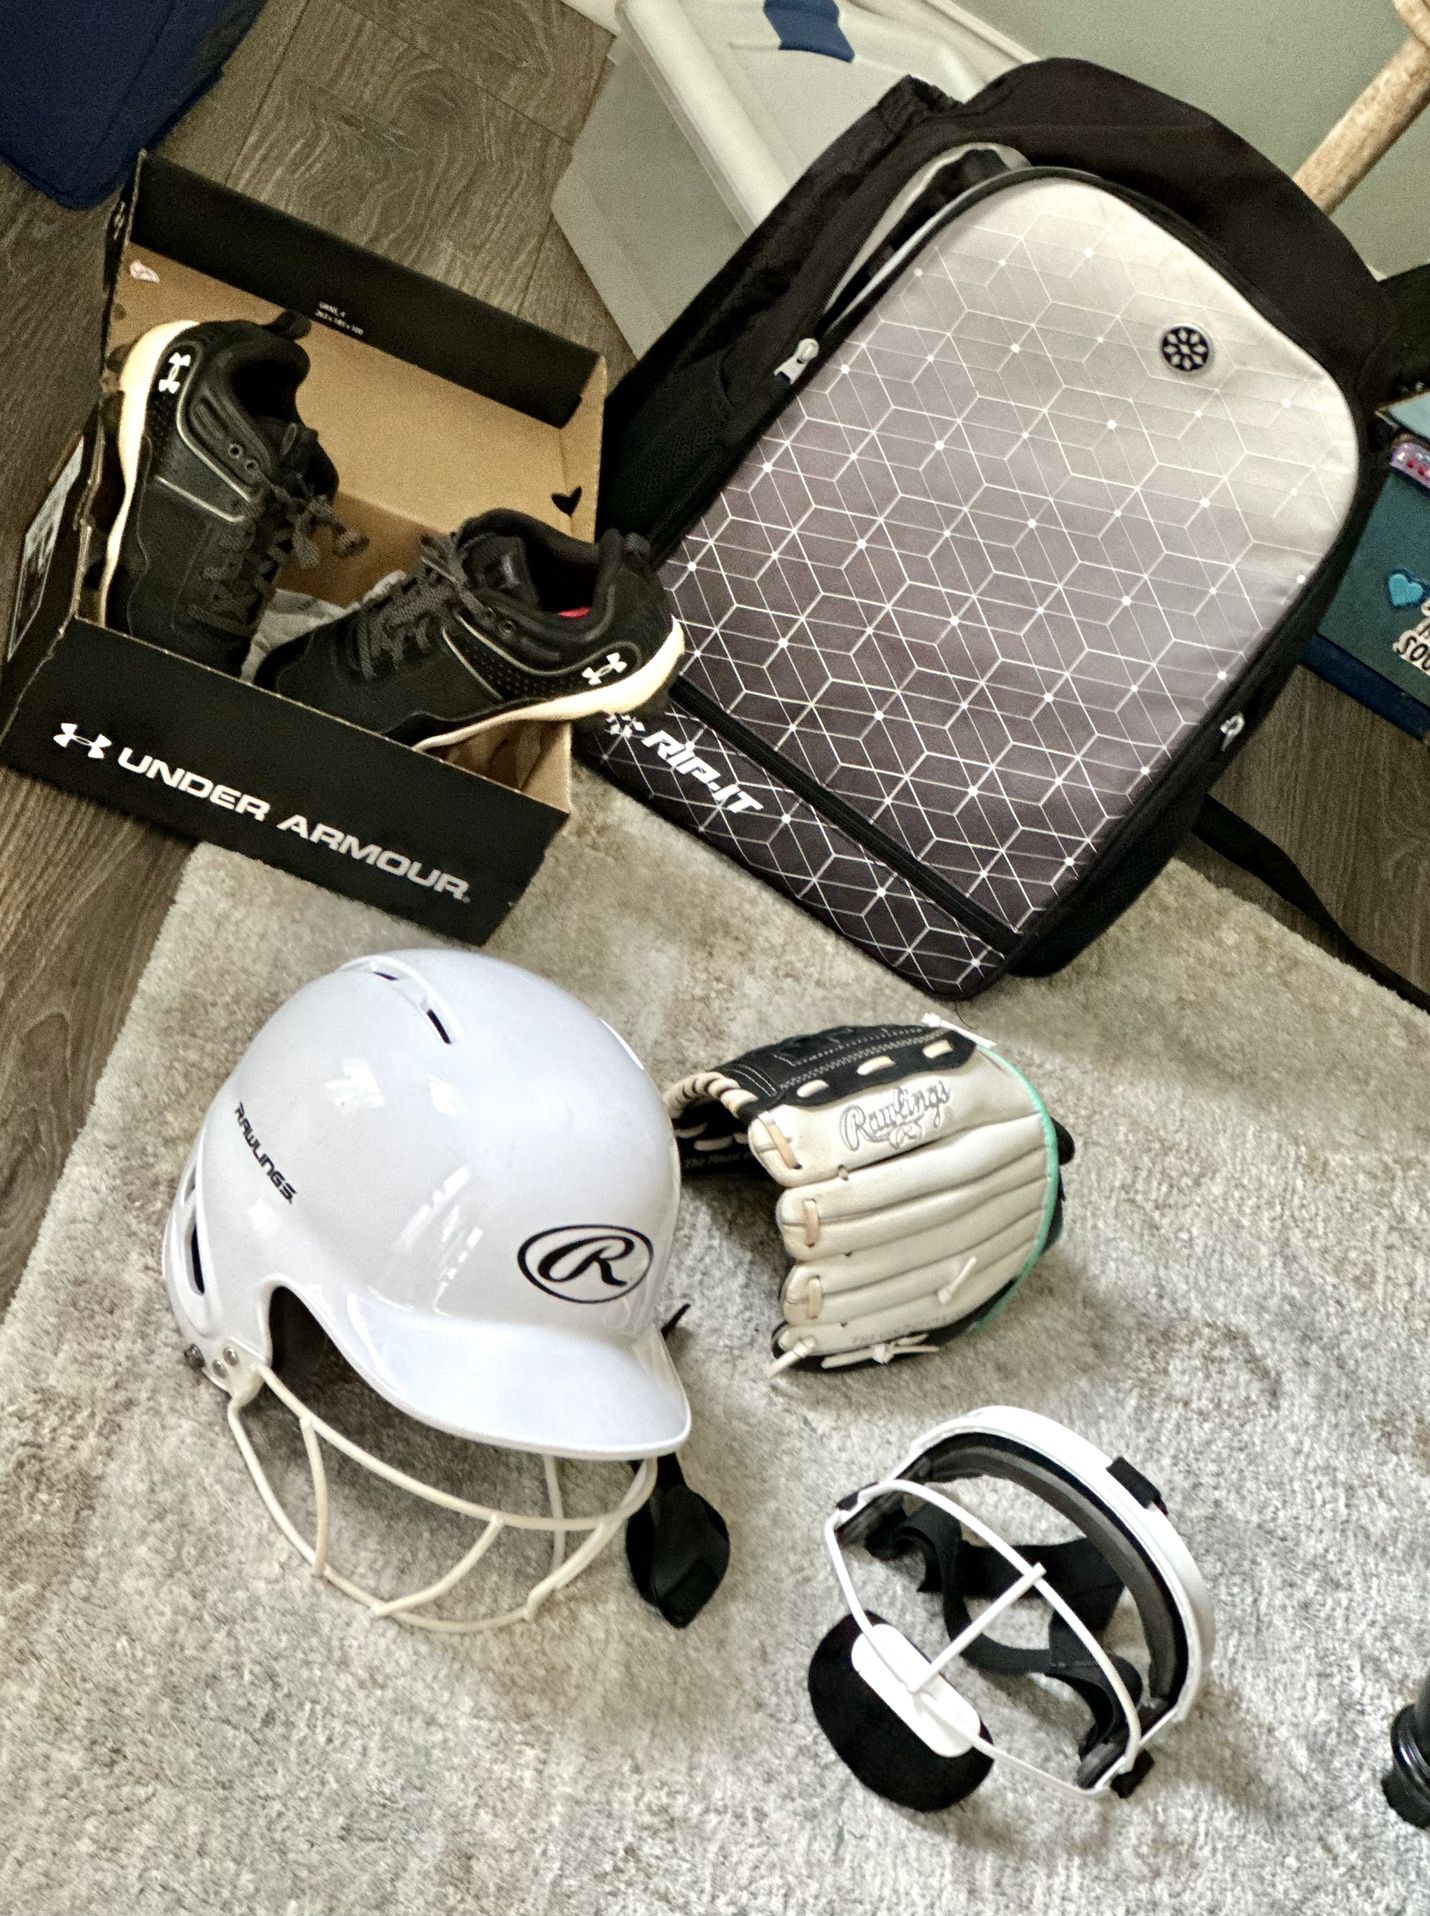 Softball gear: Bag, Glove, Helmet, Face Guard